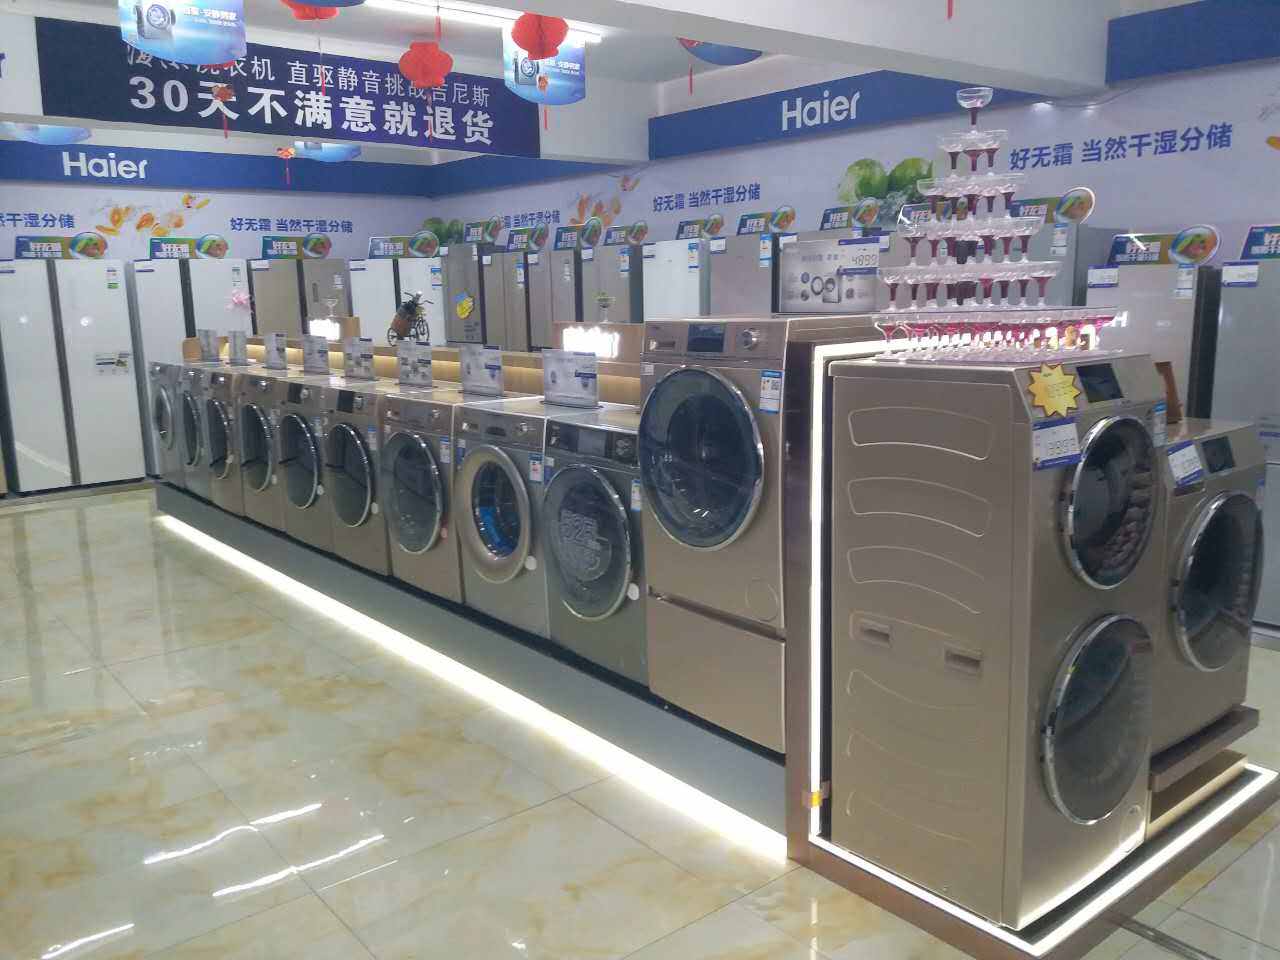 金家海尔专卖店全球首届洗衣机节